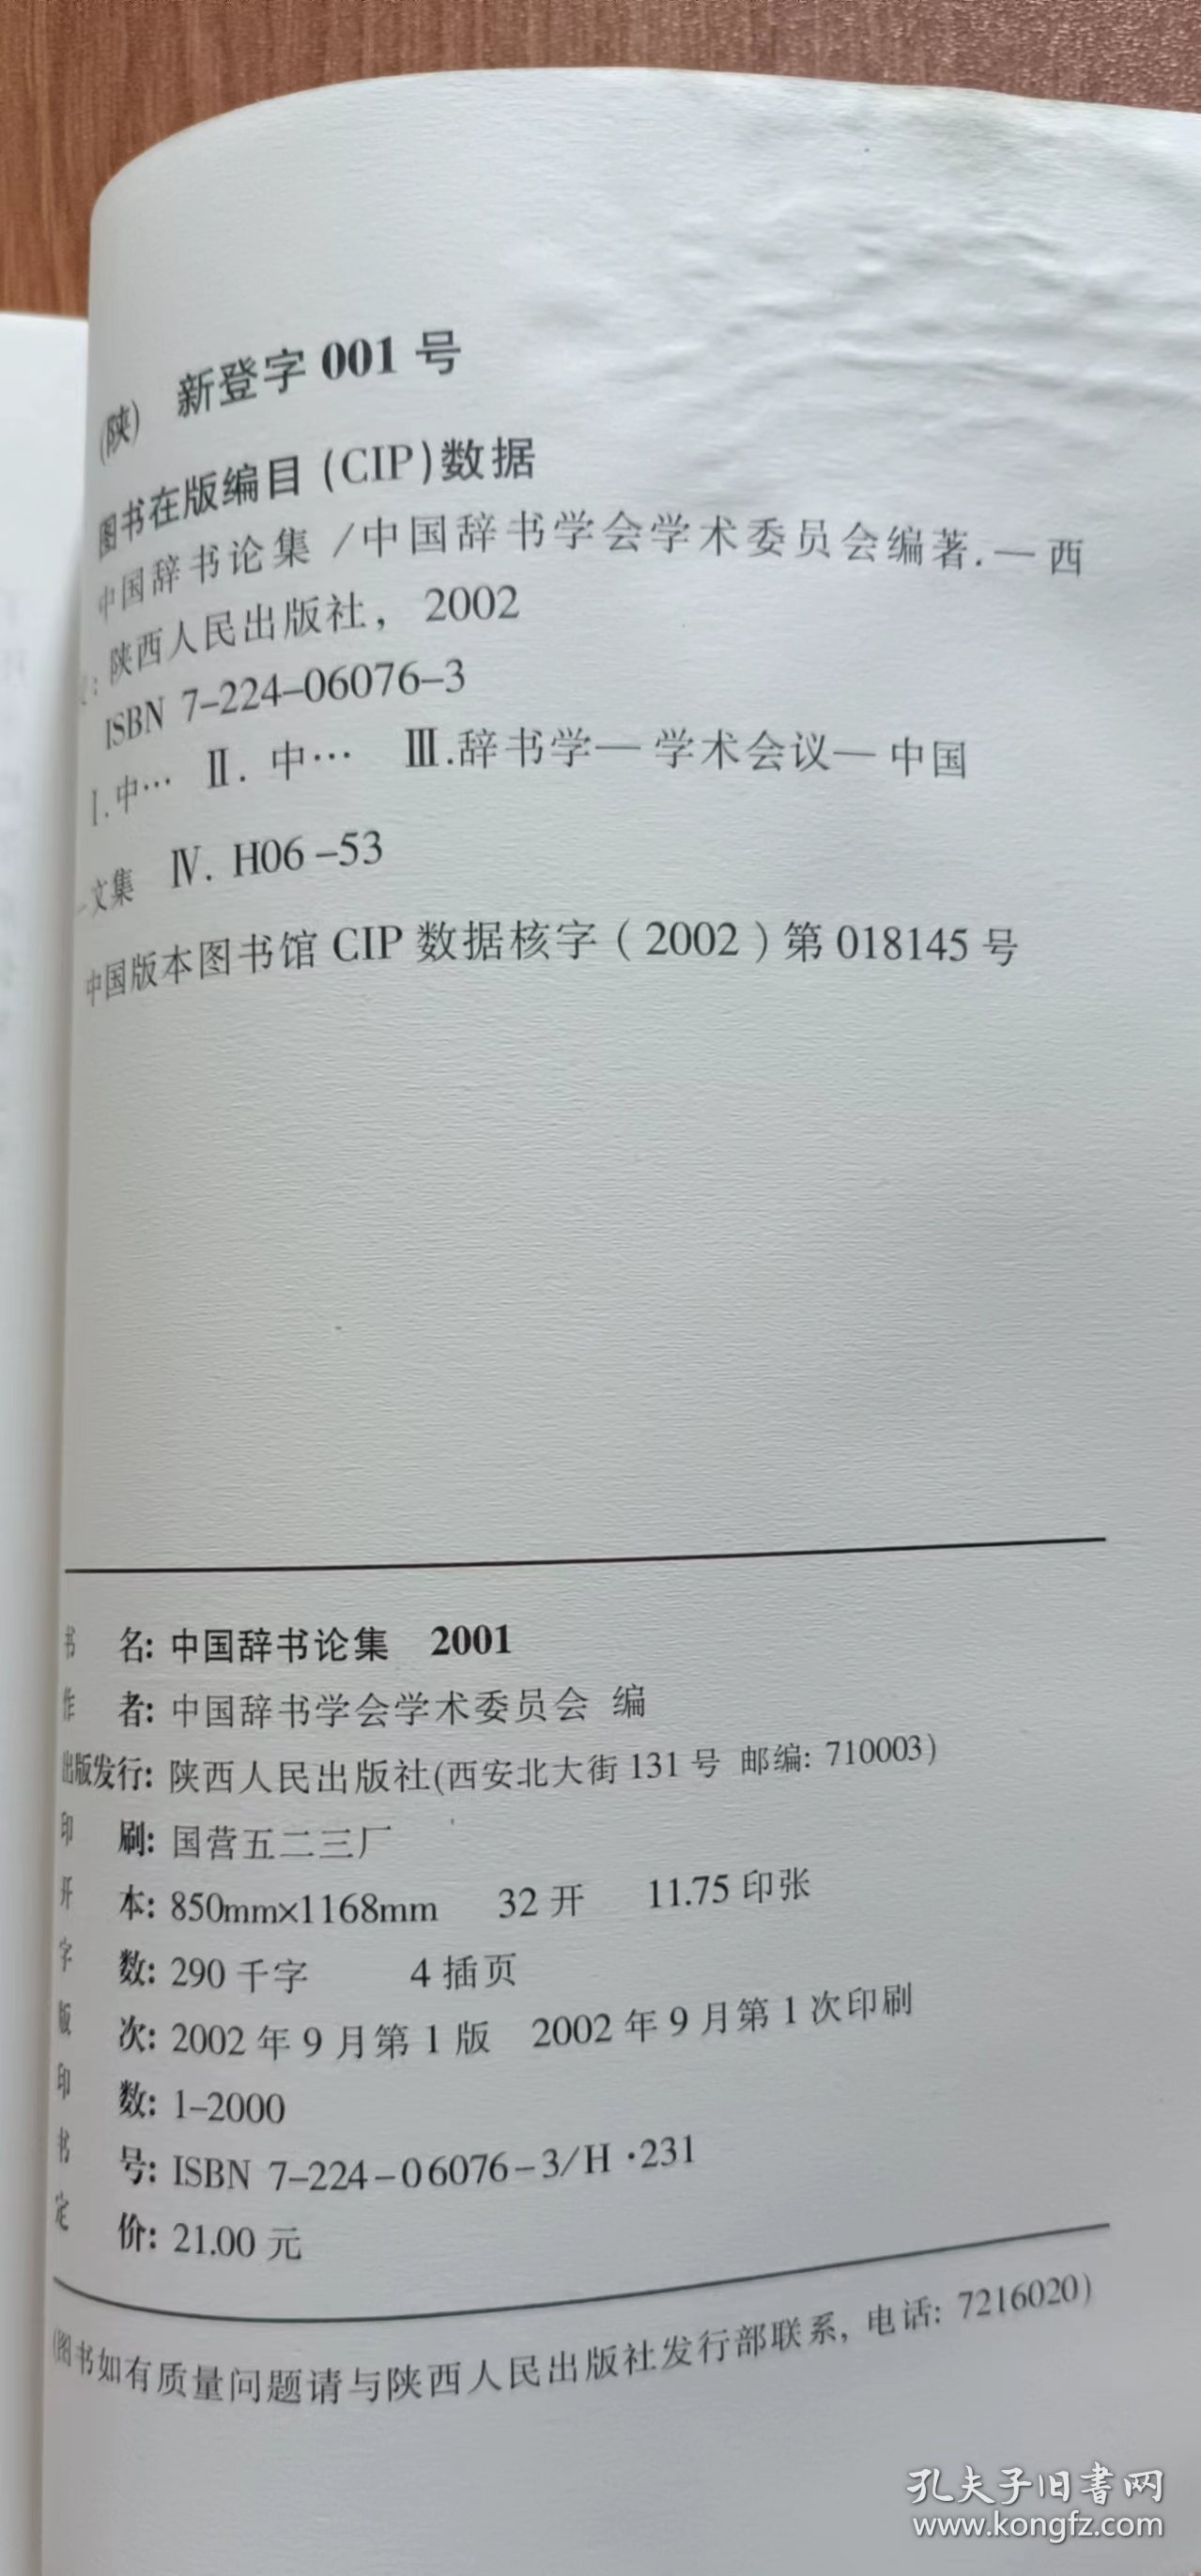 中国辞书论集2001,中国辞书学会学术委员会编,陕西人民出版社